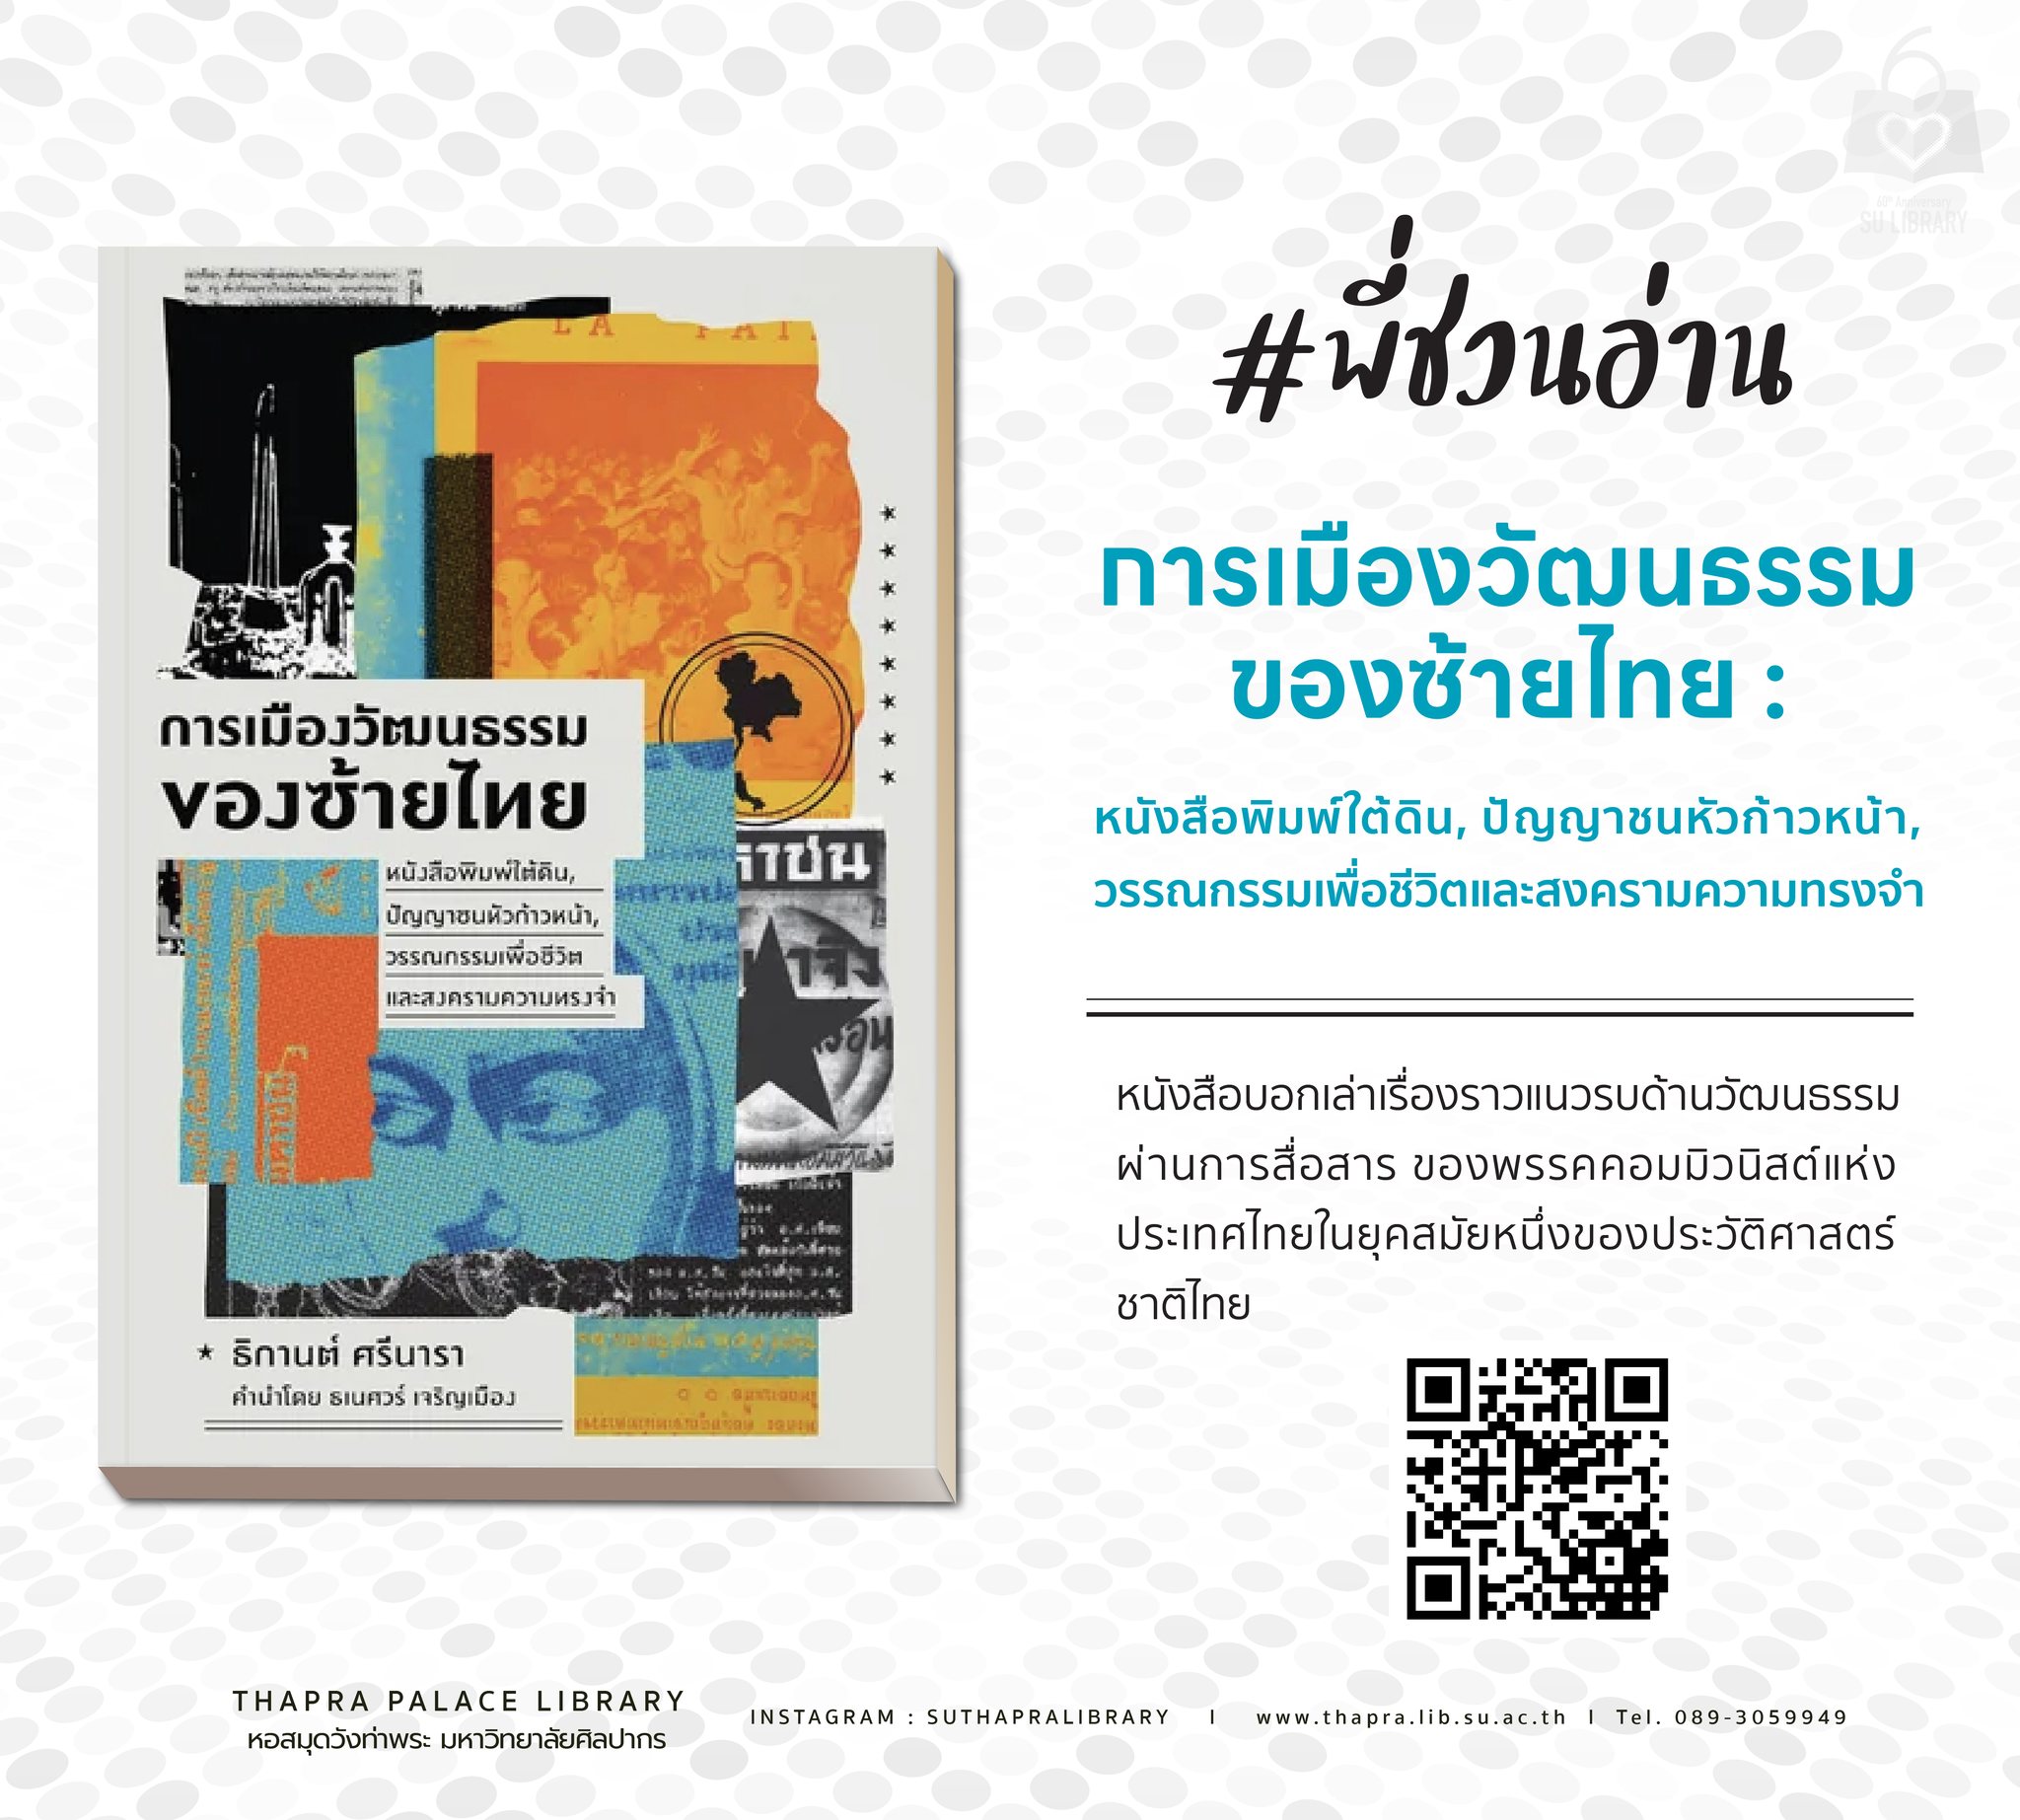 การเมืองวัฒนธรรมของซ้ายไทย : หนังสือพิมพ์ใต้ดิน, ปัญญาชนหัวก้าวหน้า, วรรณกรรมเพื่อชีวิตและสงครามความทรงจำ